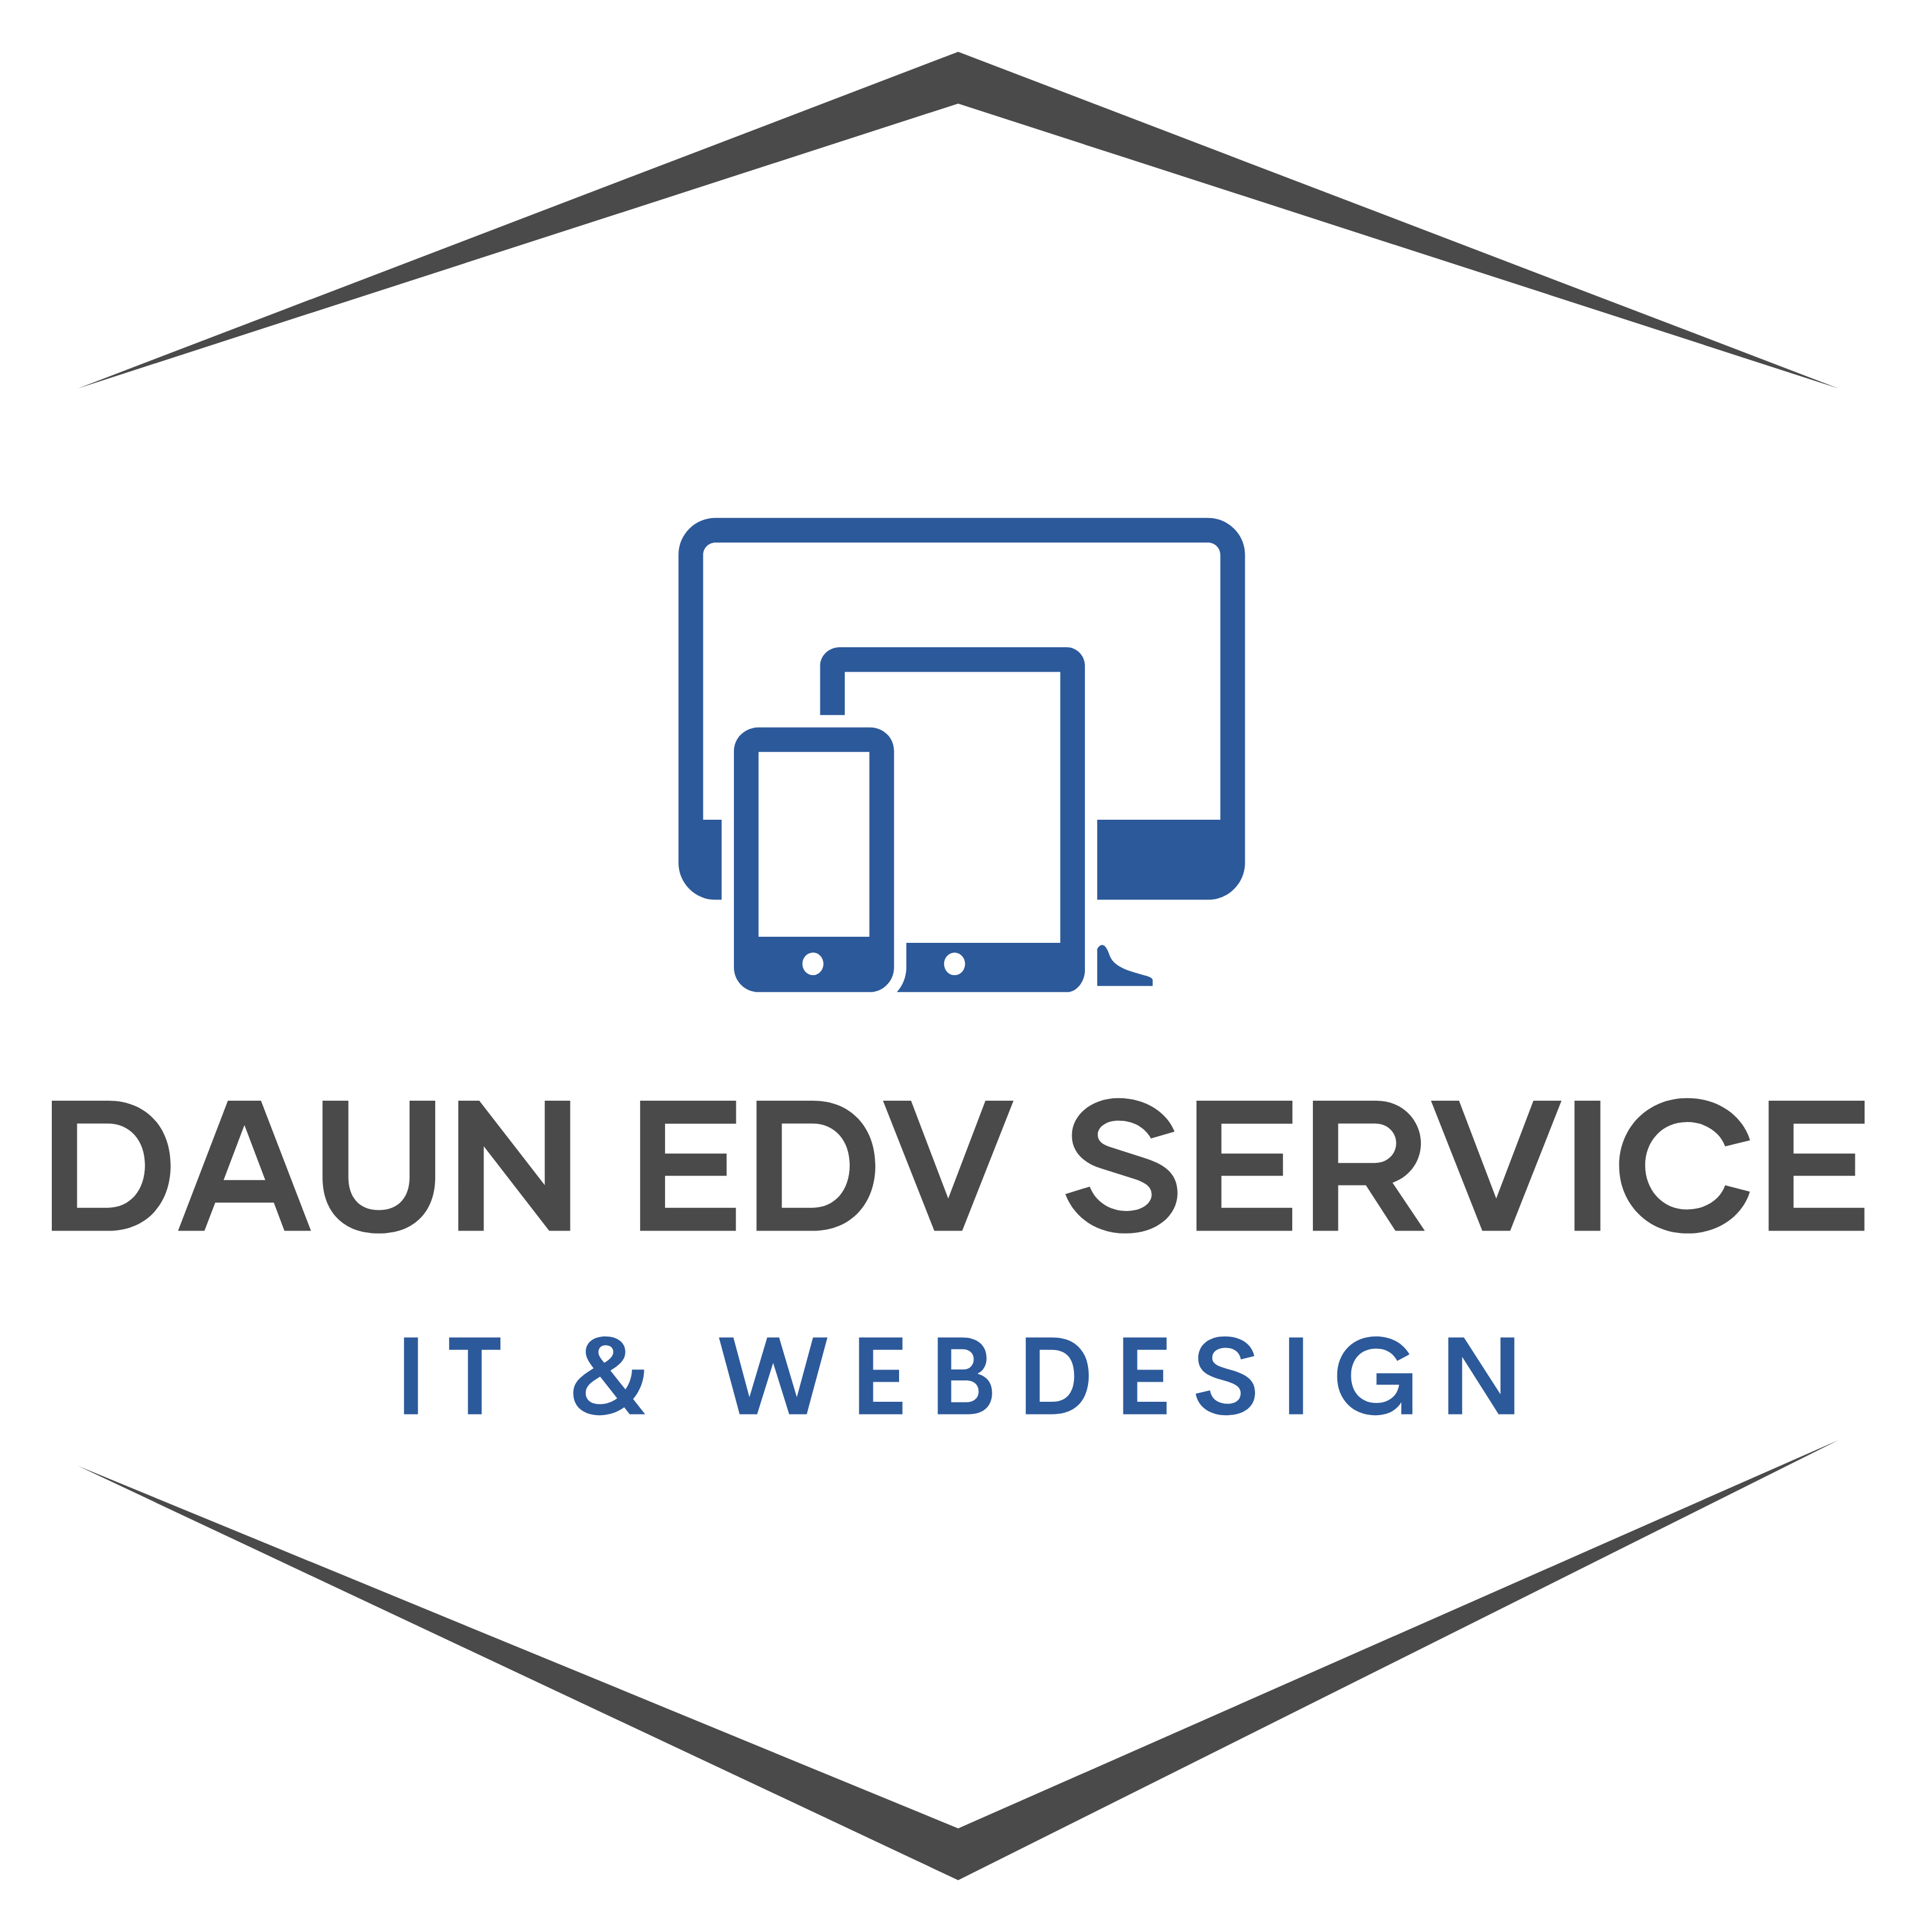 Daun EDV Service